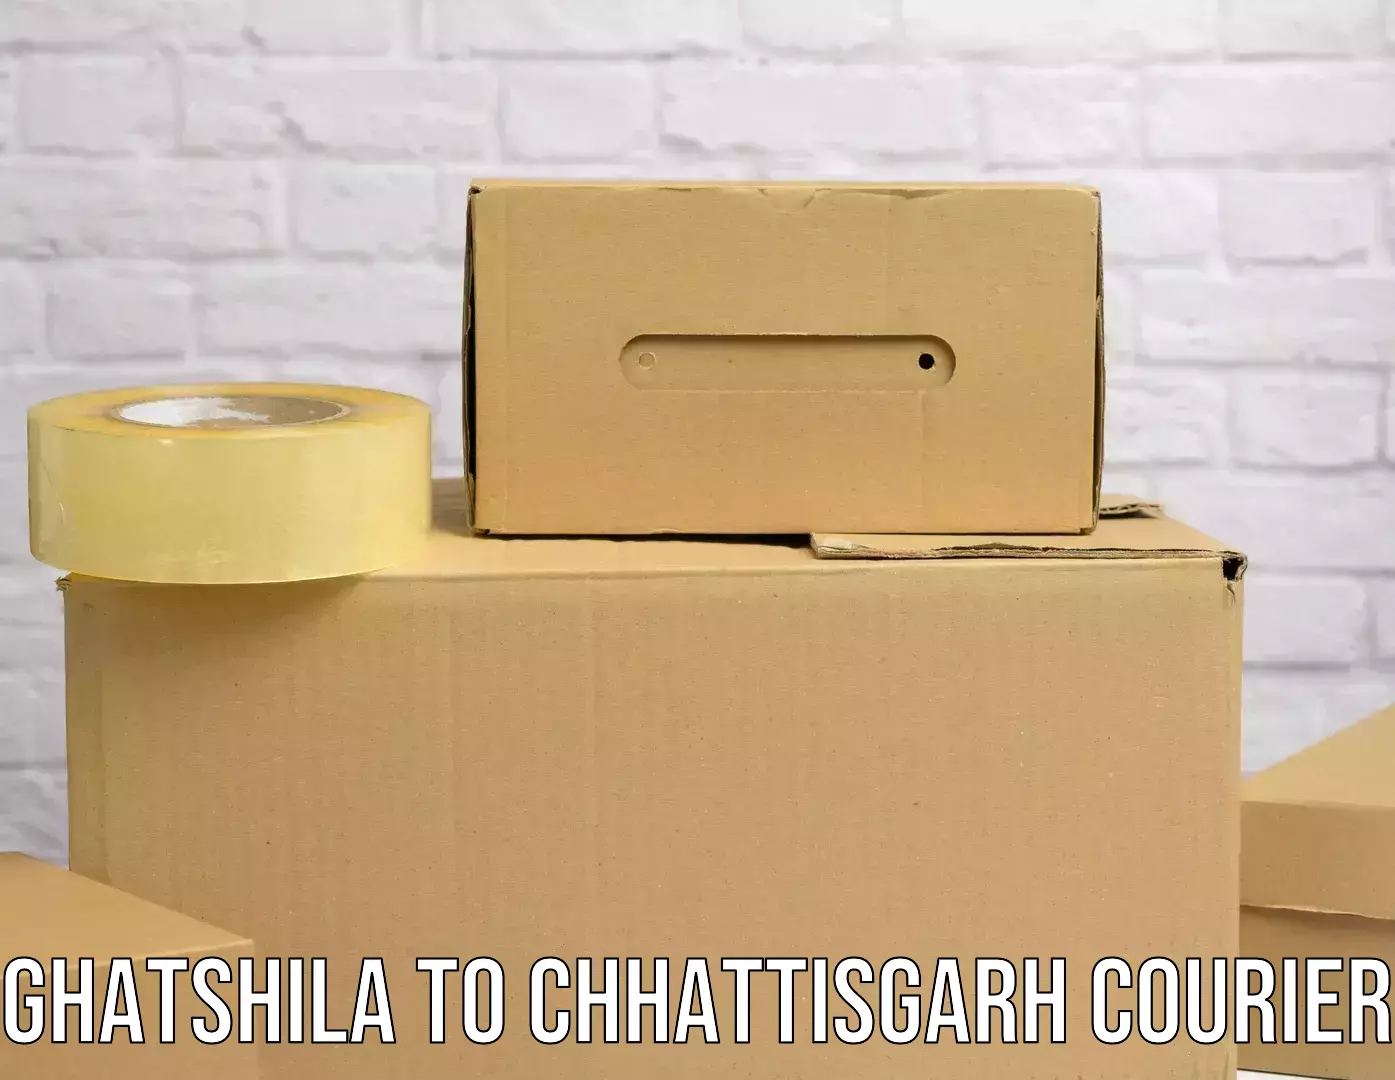 Express mail service Ghatshila to Mungeli